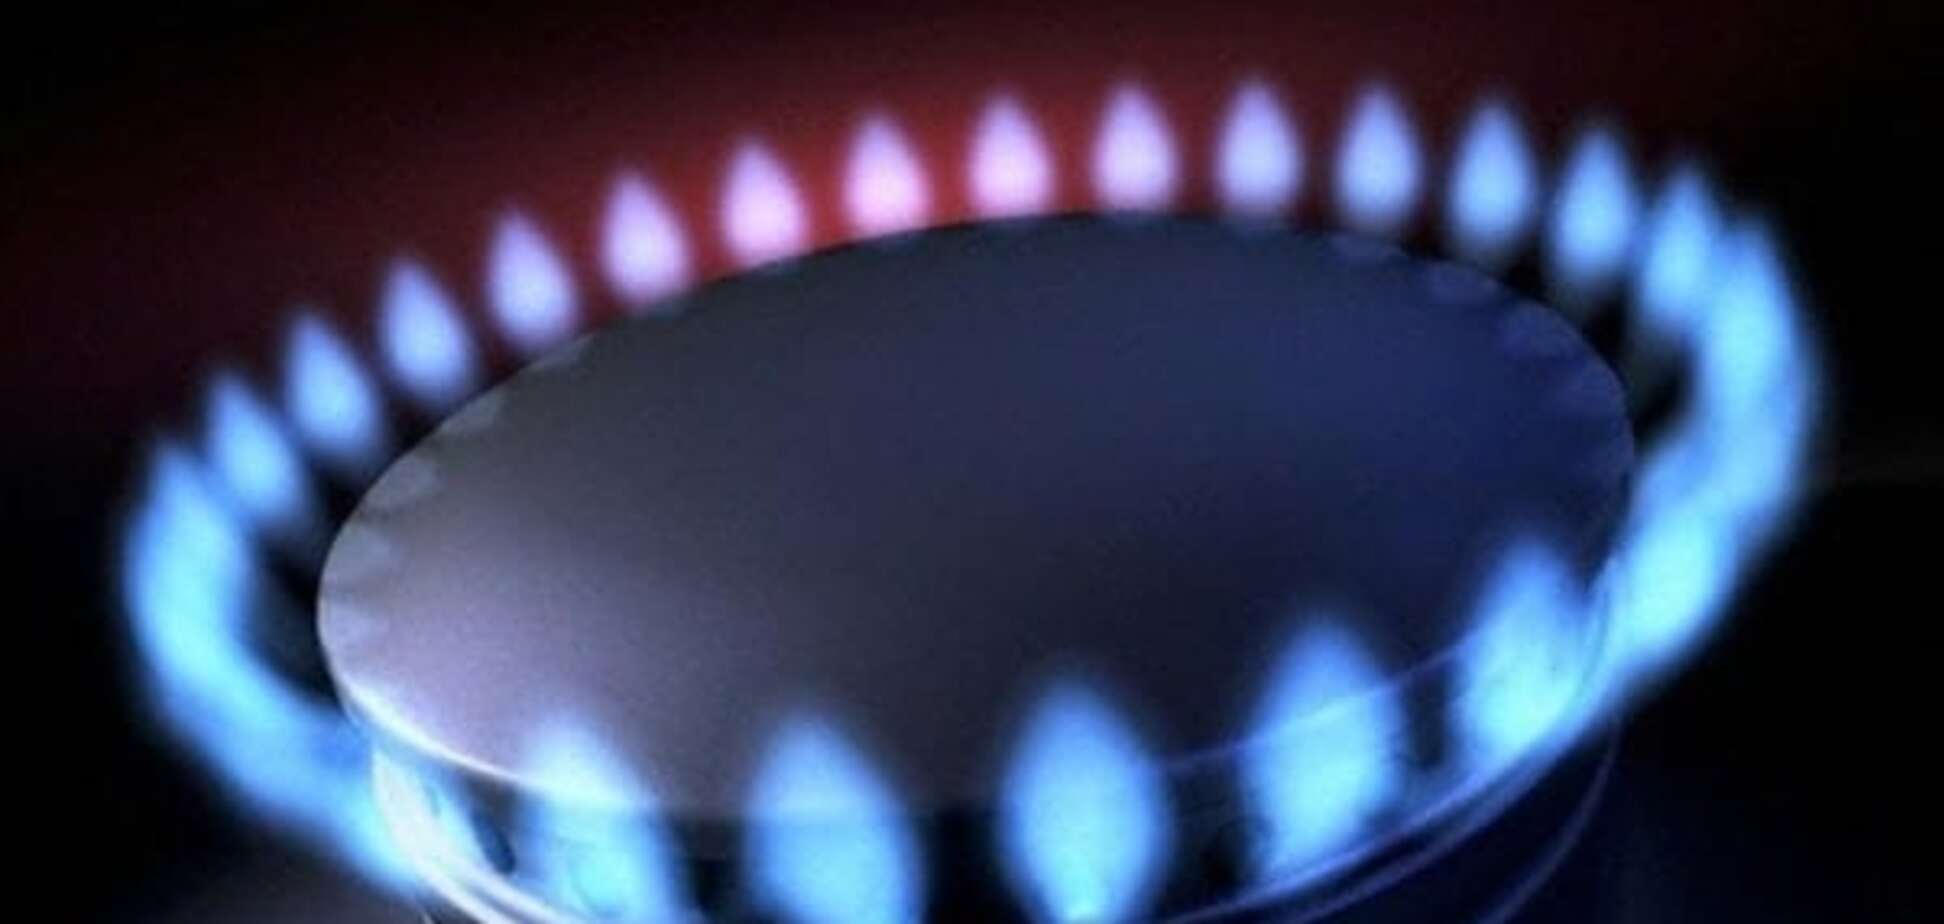 Україна не купуватиме у Росії газ - Насалик